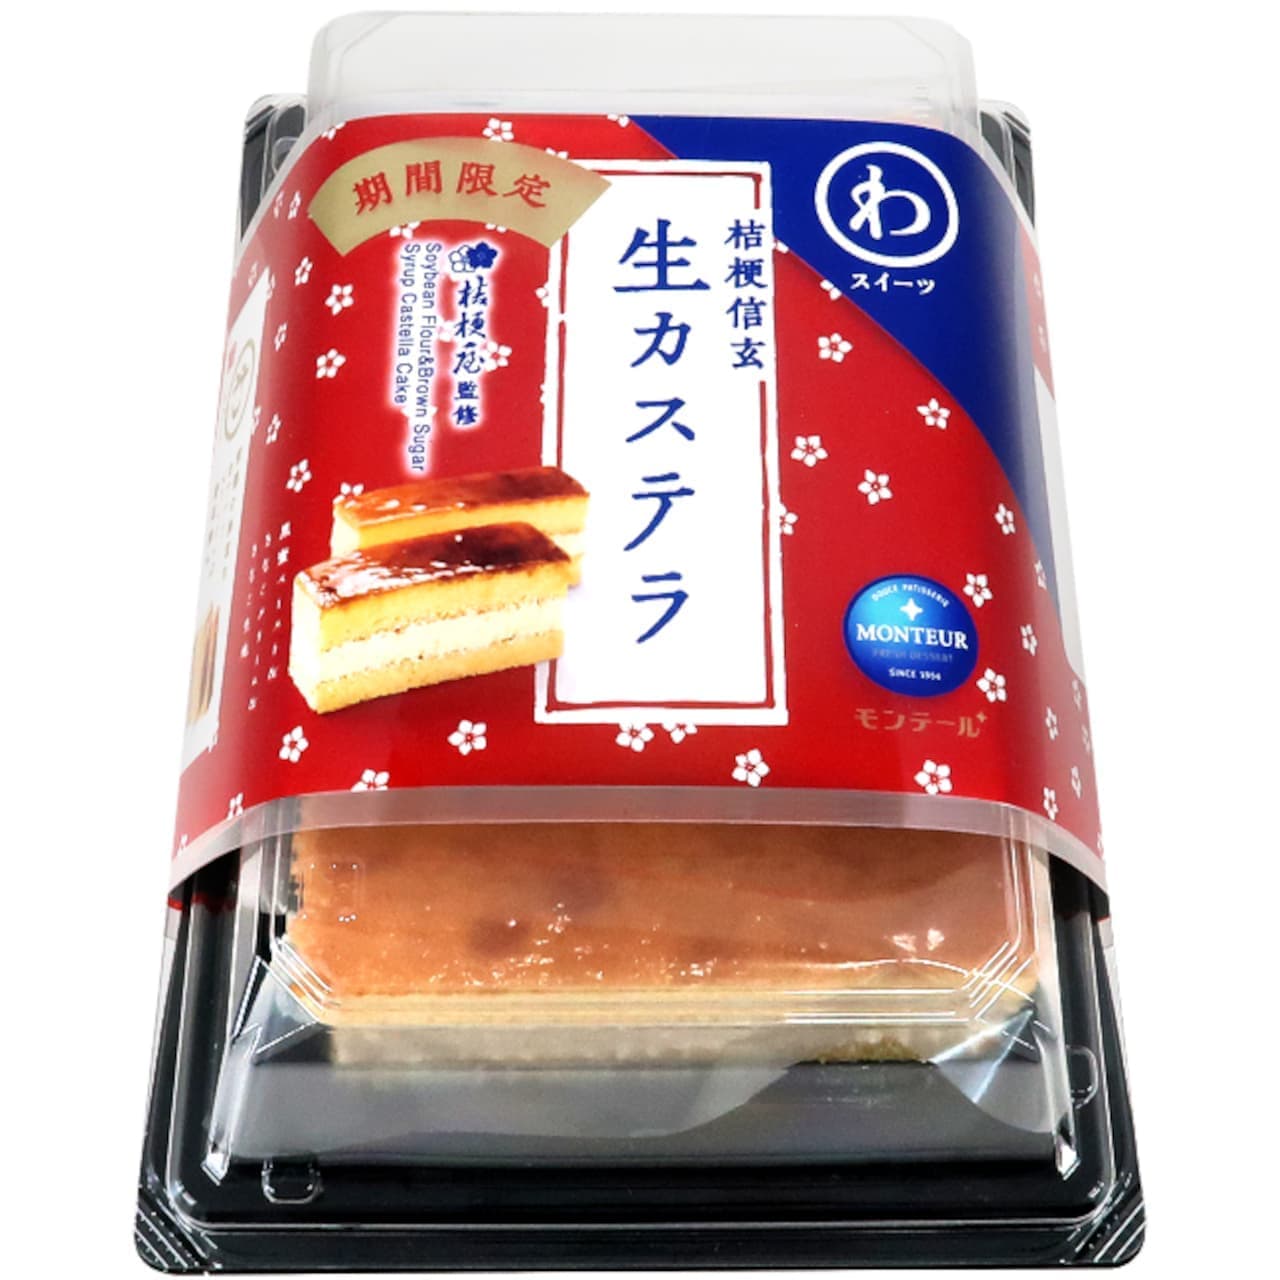 Montale "Kikyo Shingen, Fresh Castella" package